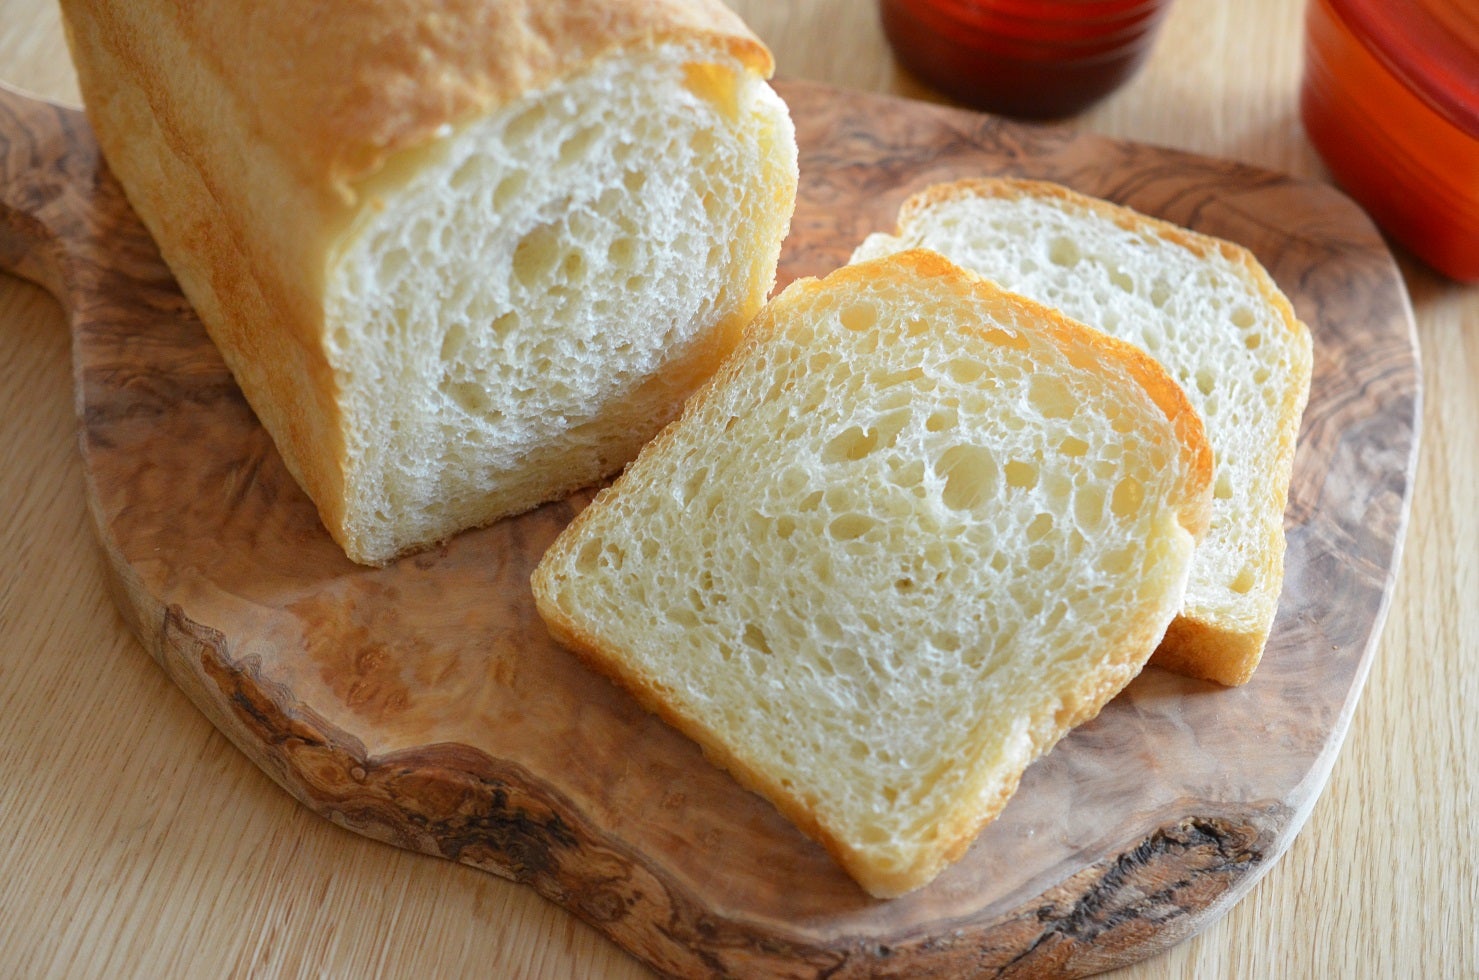 食パン型で焼き上げたフランスパン『ハードトースト』 | 国立 低温長時間発酵パン教室 le sucrier